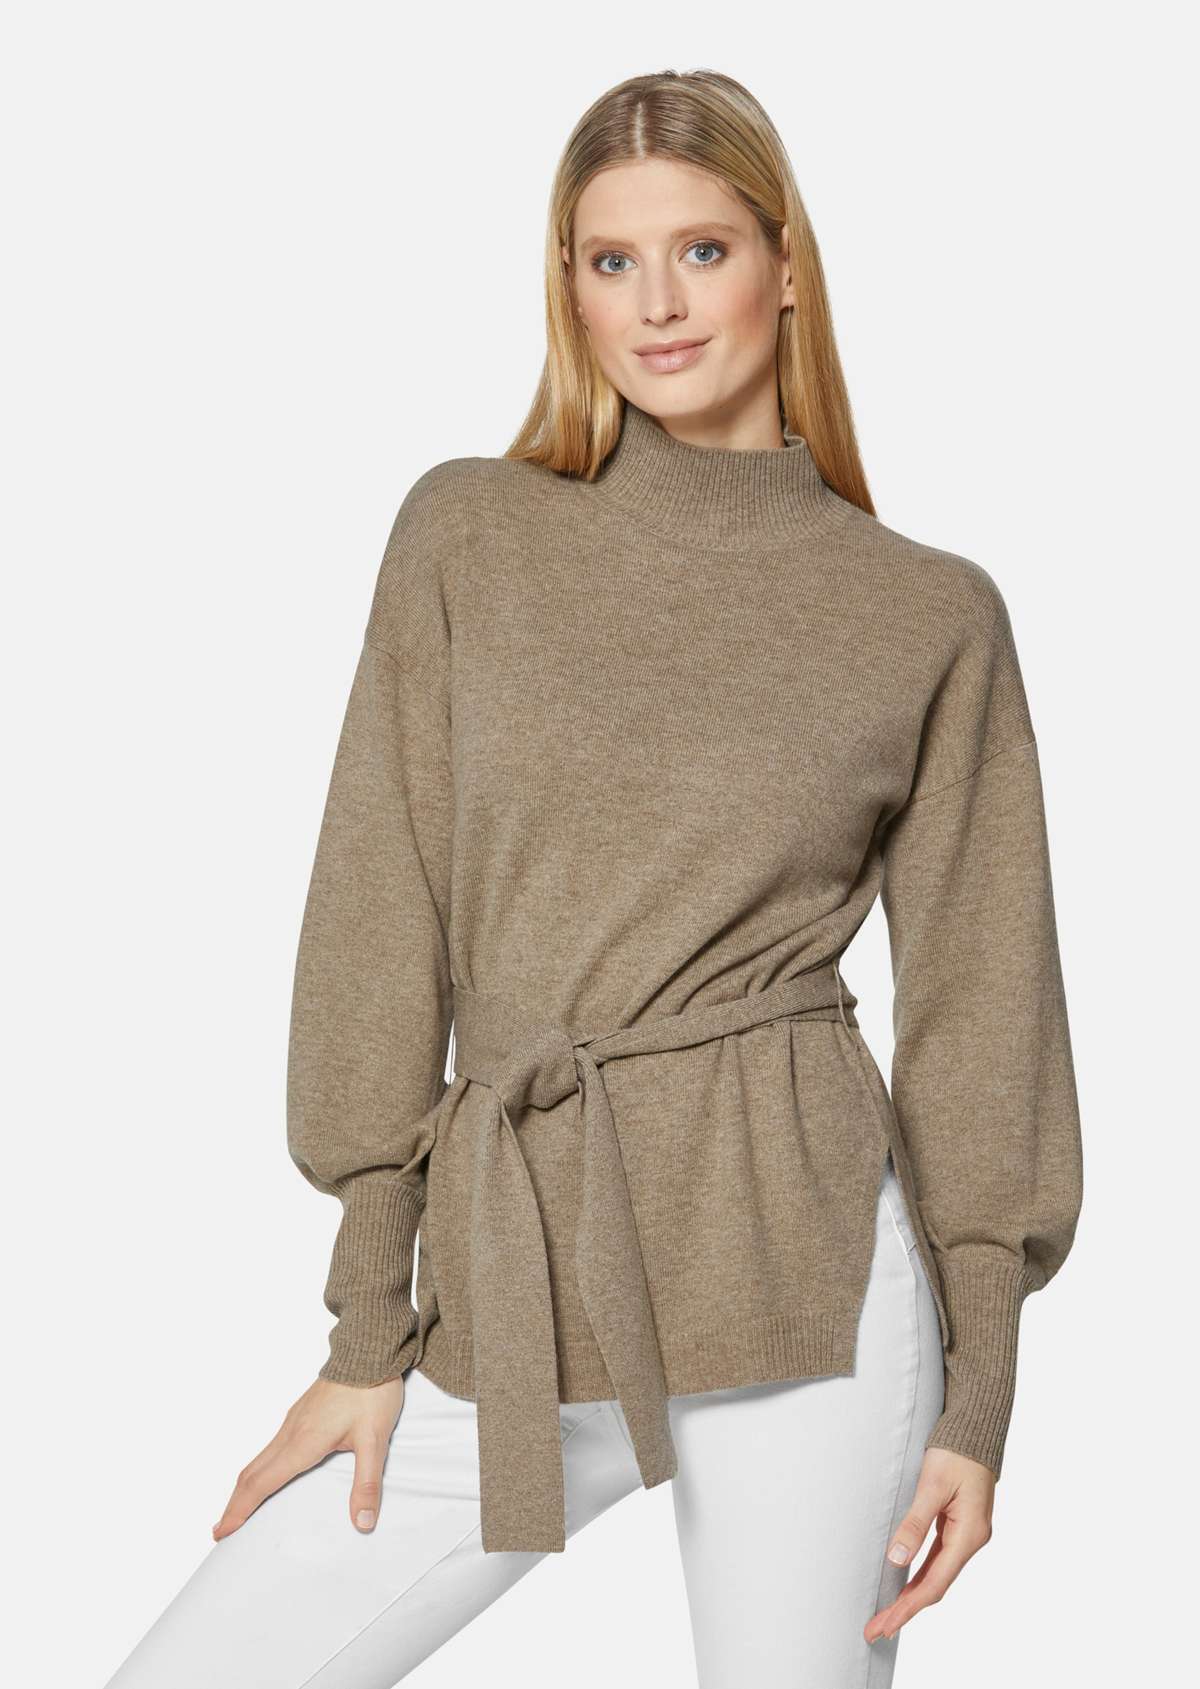 Пуловер с длинными рукавами слоновой кости и поясом.